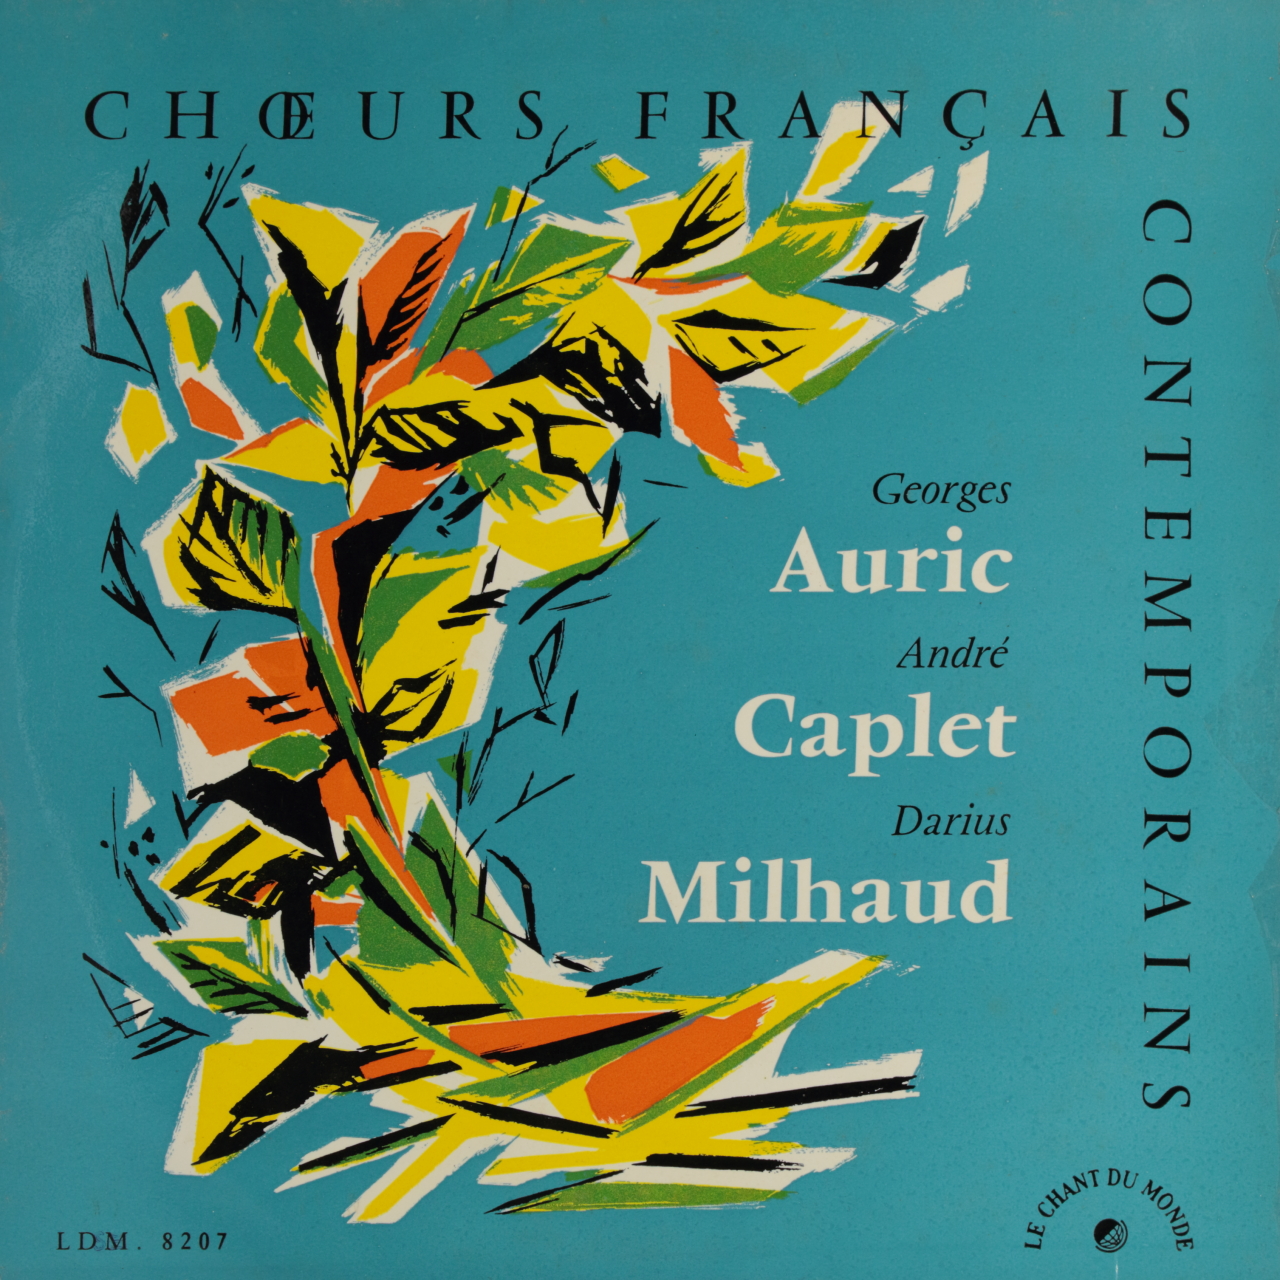 Milhaud / Caplet / Auric: Choeurs français contemporains